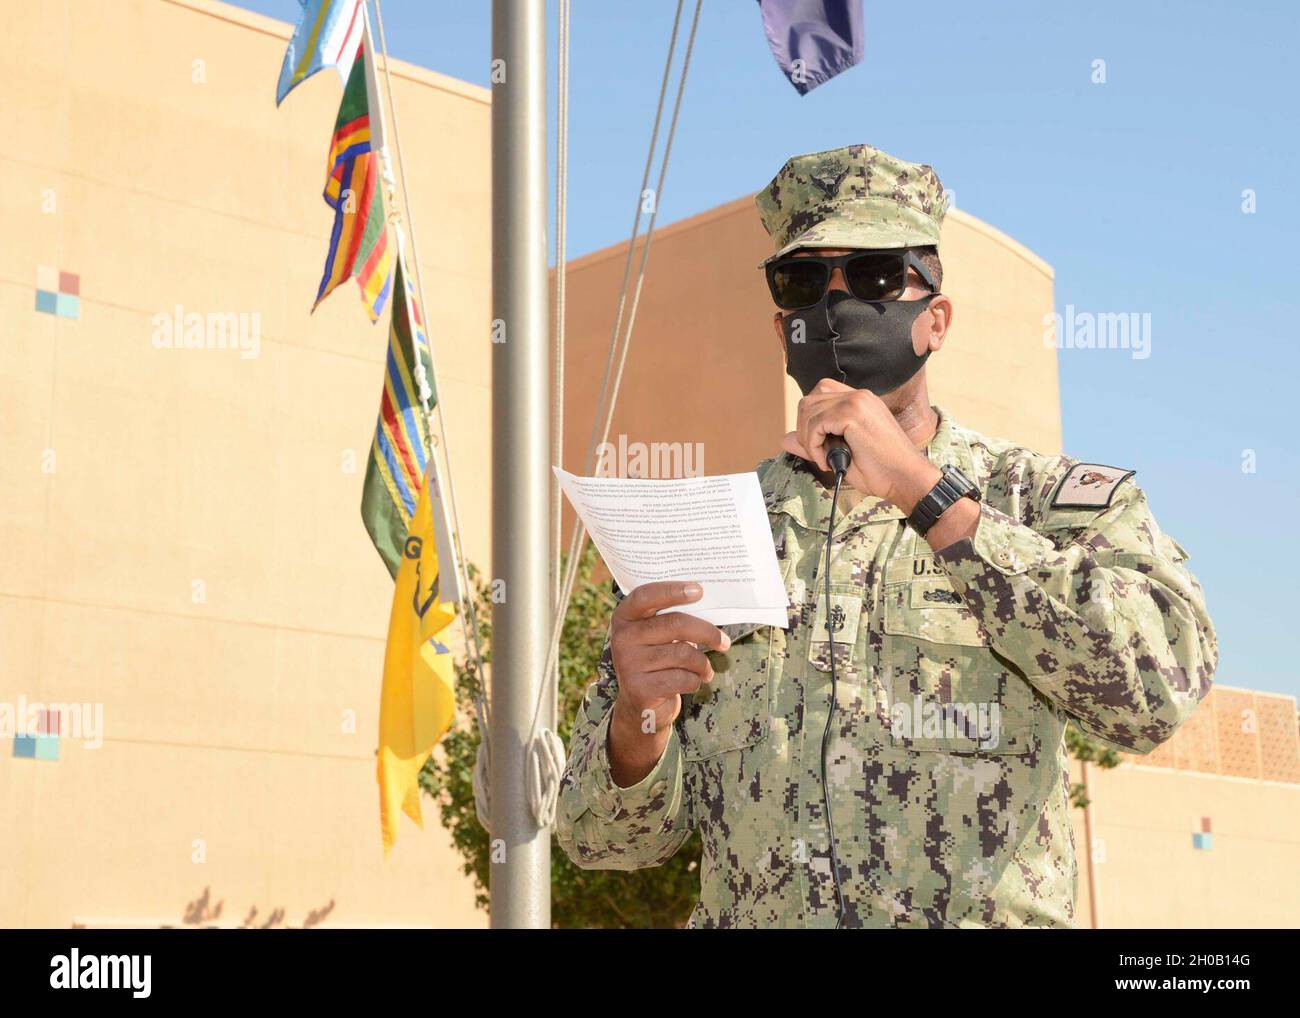 210114-N-JO245-1001 MANAMA, Bahrain (14 gennaio 2020) il capo ospedale Corpsman Darnell Mason recita il discorso di Martin Luther King (MLK) “i Have a Dream” prima dell’inizio di una marcia MLK Freedom a bordo del Naval Support Activity (NSA) Bahrain. I membri del servizio e il personale di base si sono Uniti in osservanza del Martin Luther King Jr Day. La marcia della libertà è stata ospitata dal Comitato multiculturale e per la diversità del Bahrain della NSA e culminata con una cerimonia, un taglio di torte e un pasto speciale alla cucina di base. Foto Stock